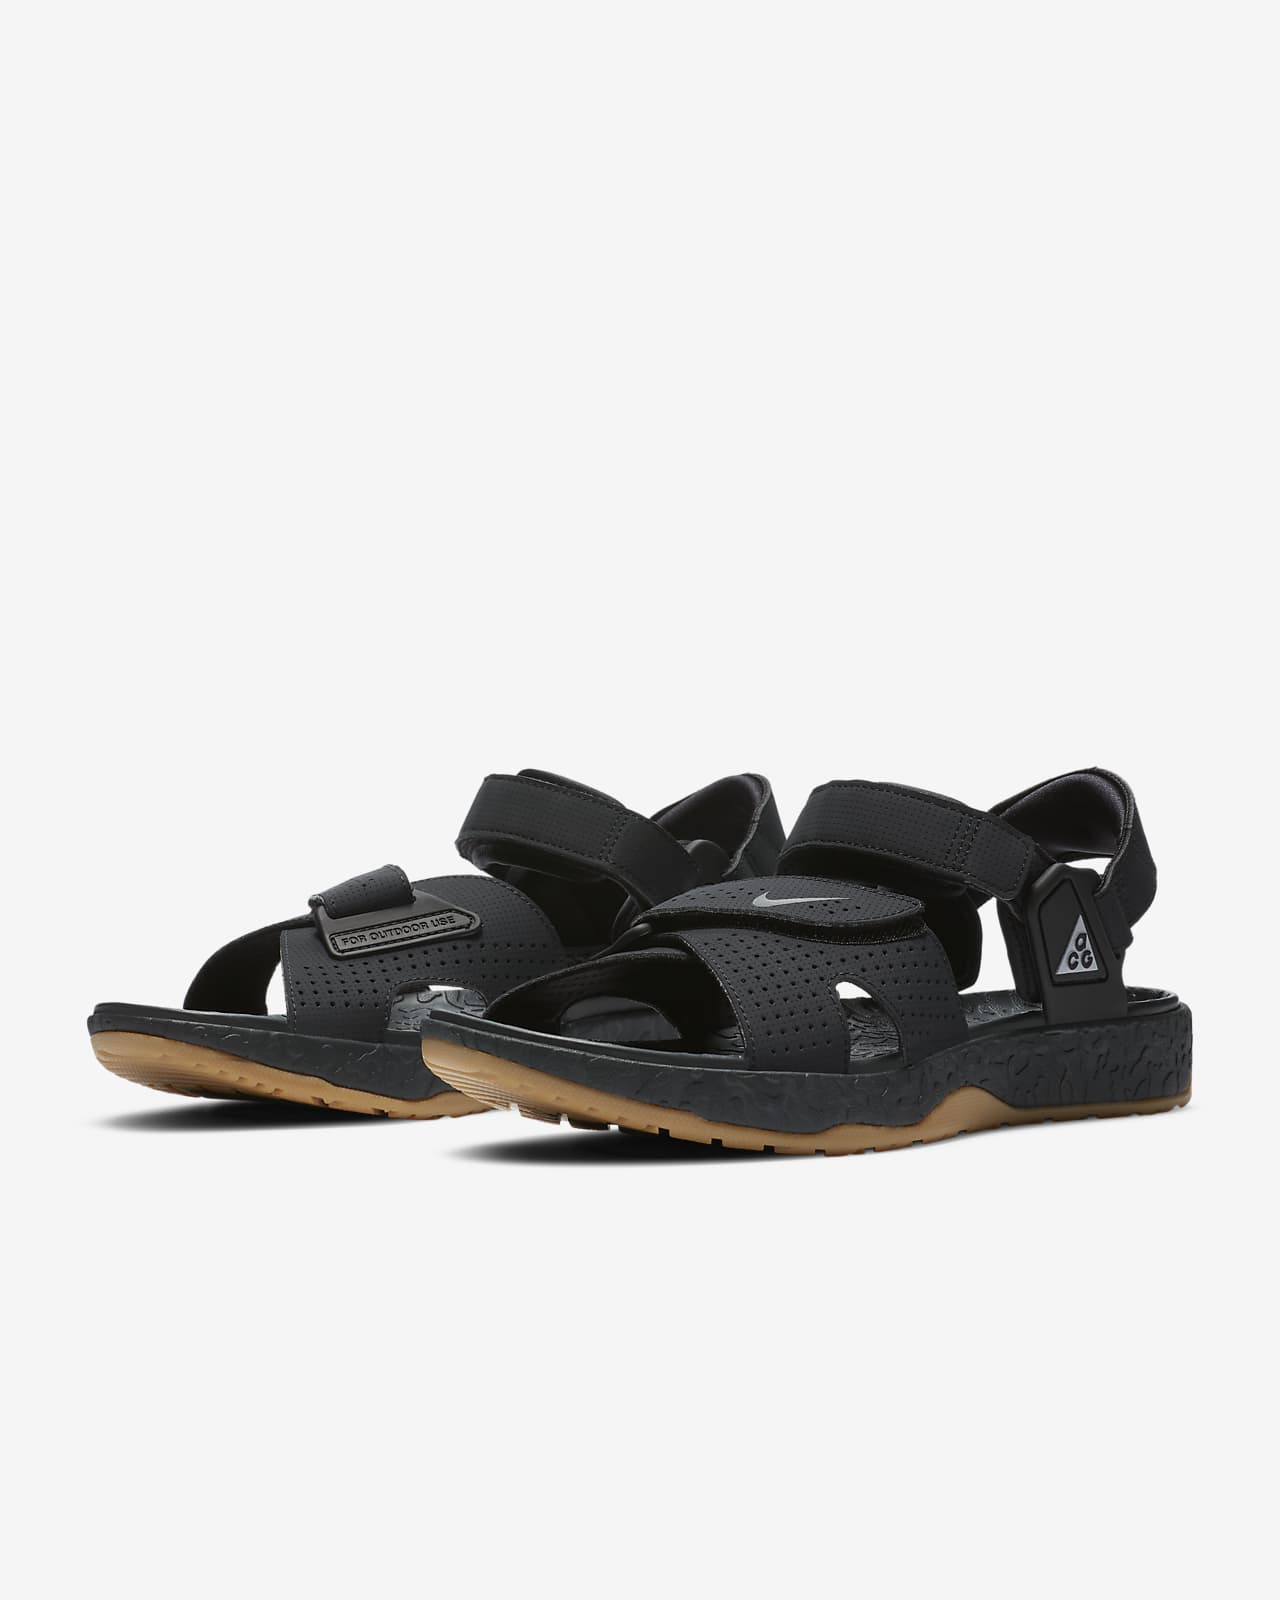 nike acg summer beach sandals